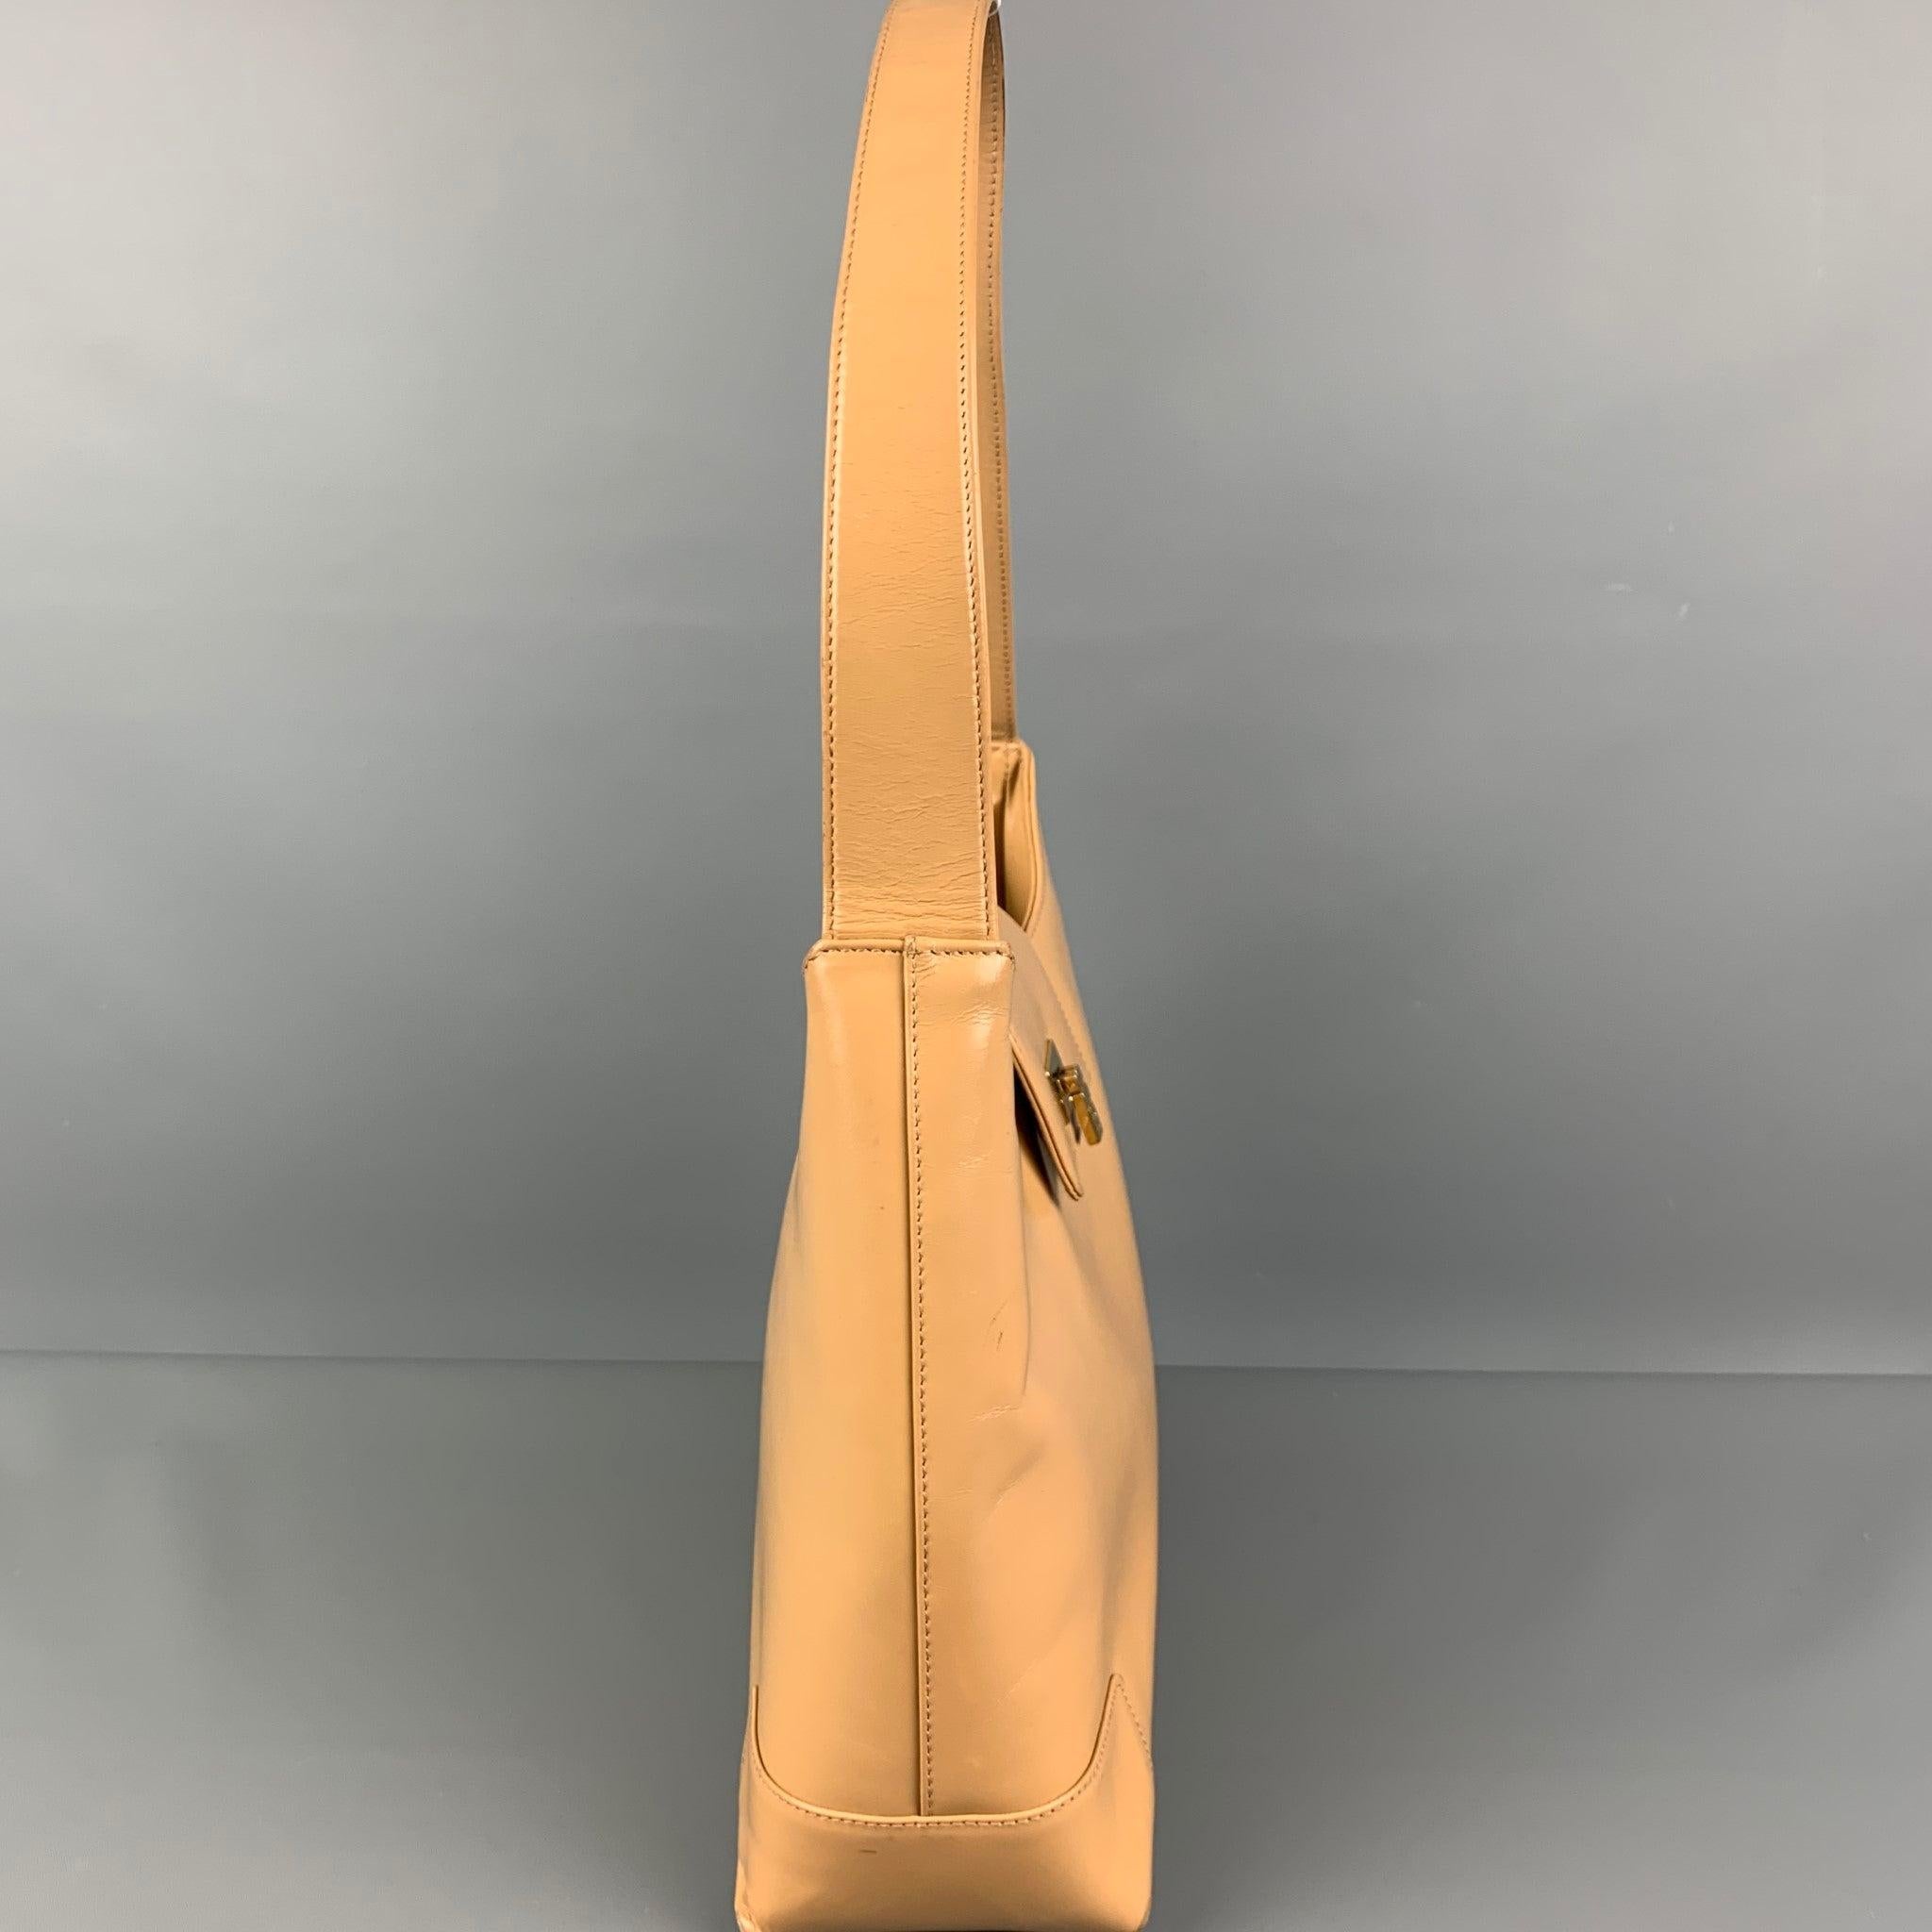 Die LAMBERTSON TRUEX Handtasche ist aus beigem Leder gefertigt und verfügt über einen Henkel, Innenfächer und einen goldfarbenen Schnallenverschluss. Hergestellt in Italien.
Gut
Gebrauchtes Zustand. Geringfügige Abnutzung und Spuren. 

Abmessungen: